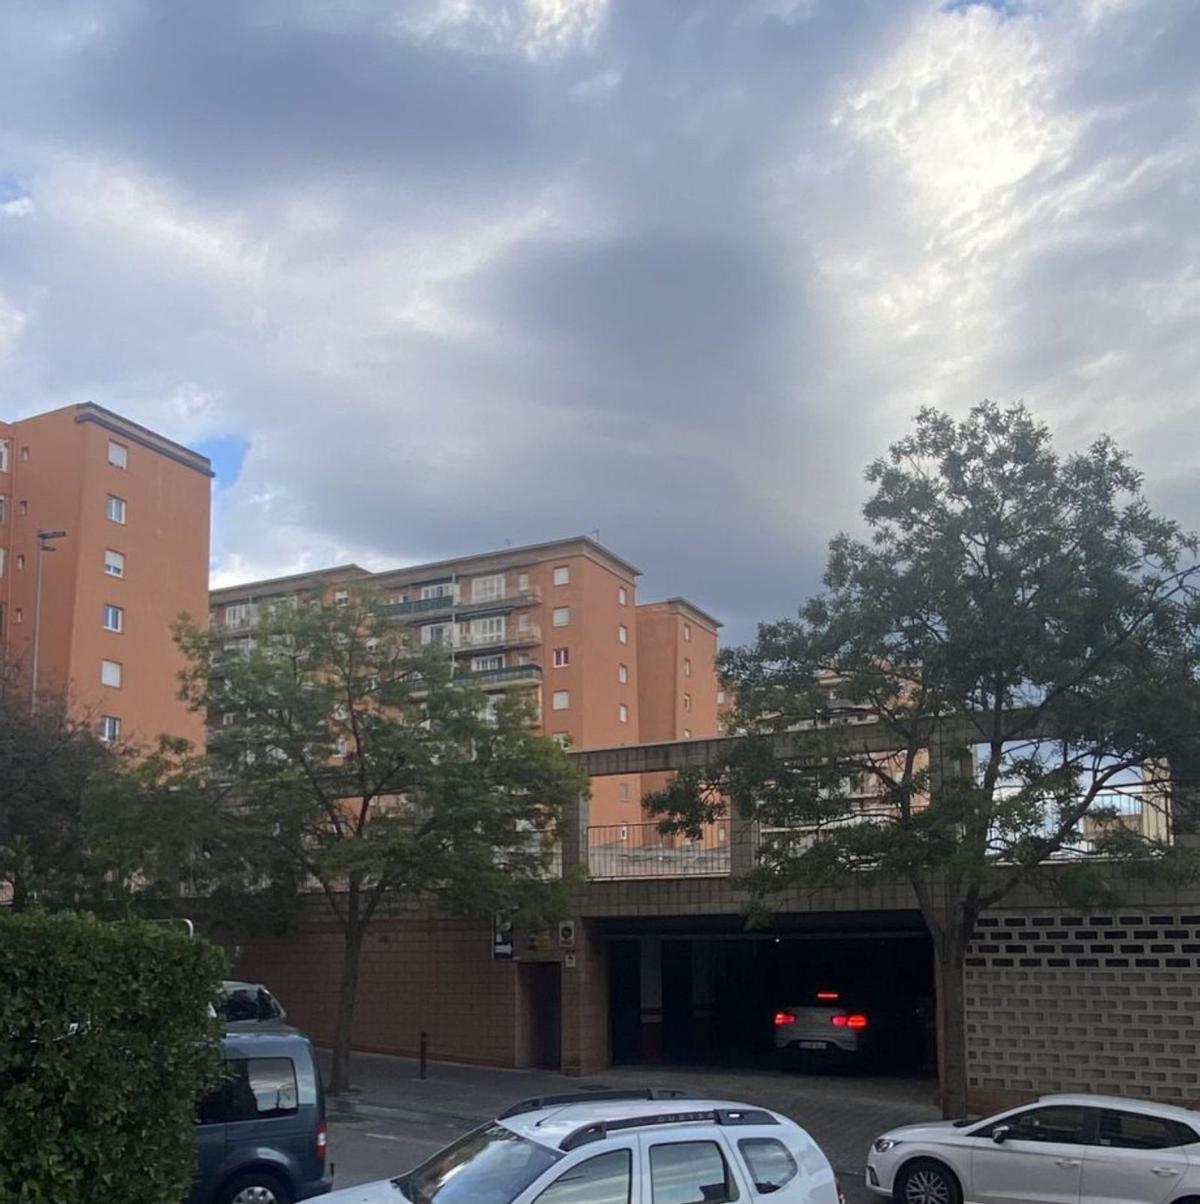 Pàrking Figueres, la solució per estacionar a la ciutat